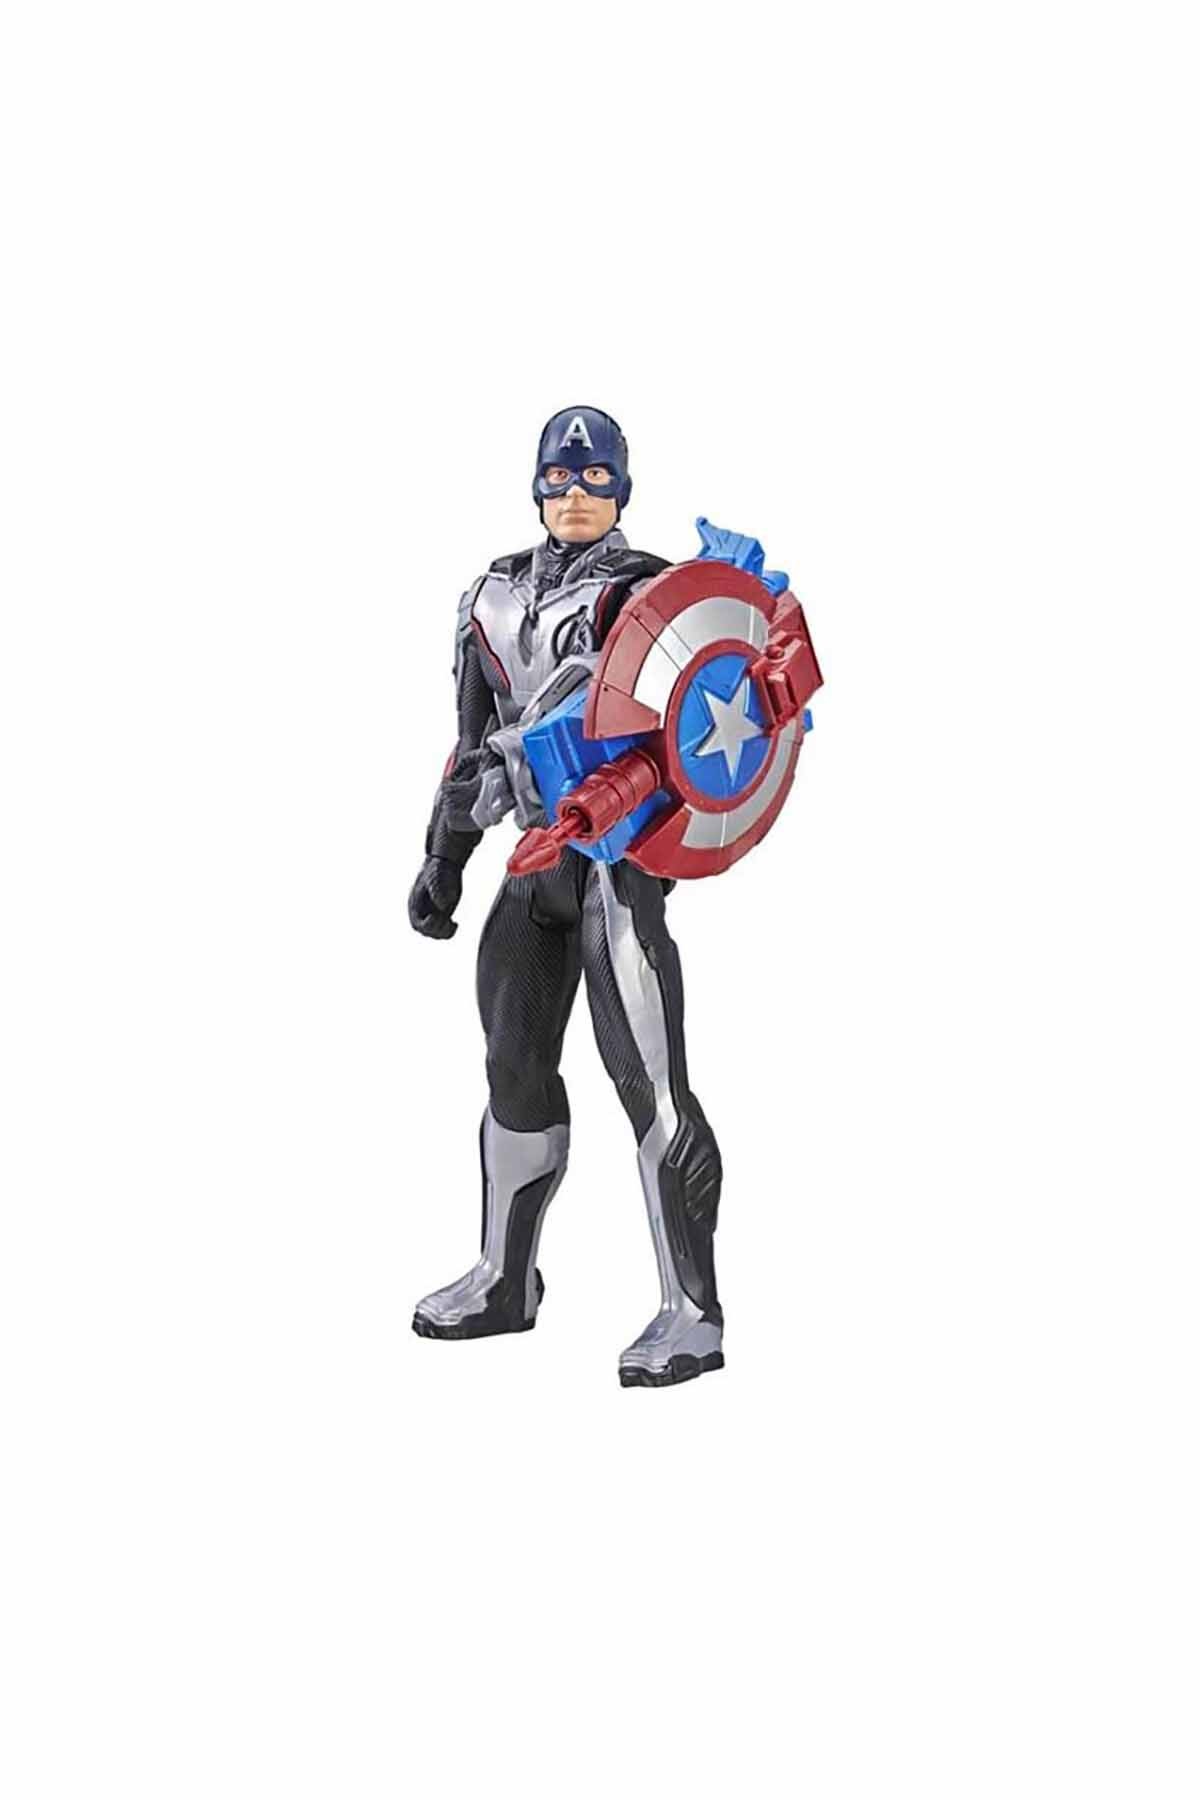 Avengers Endgame Titan Hero Captain America Özel Figür